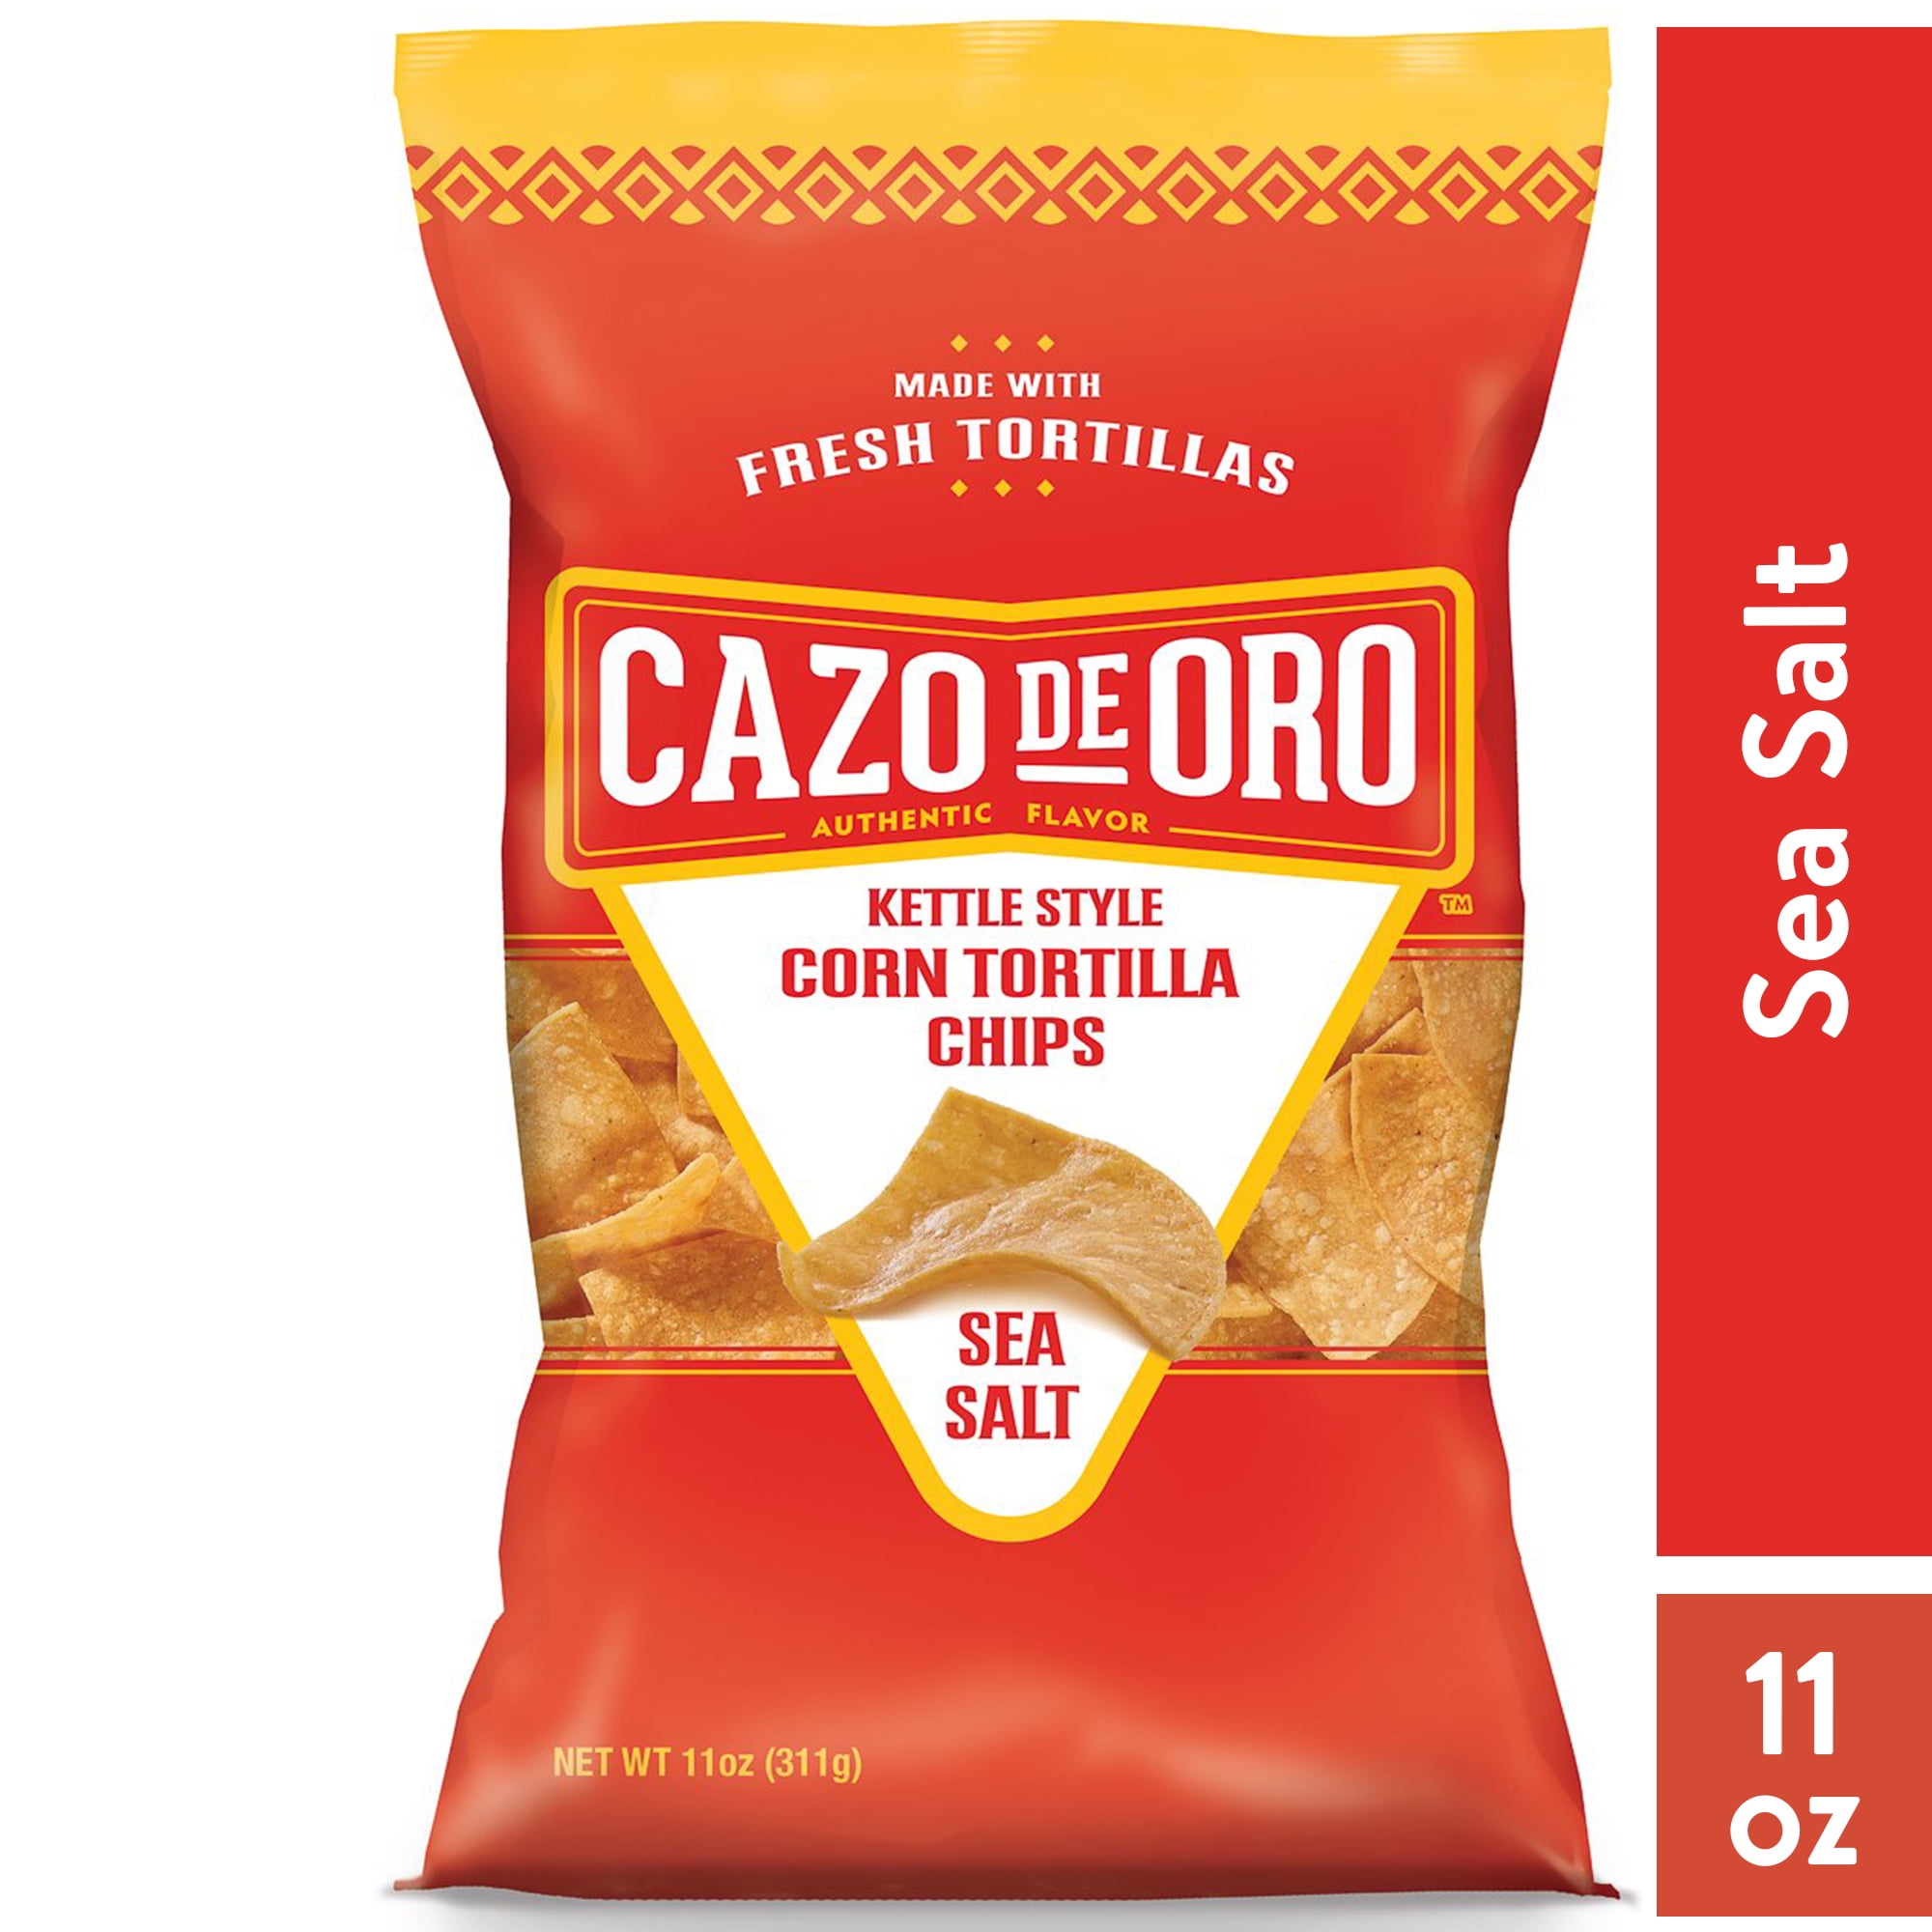 Cazo de Oro Original Kettle Style Corn Tortilla Chips, 11 oz Bag